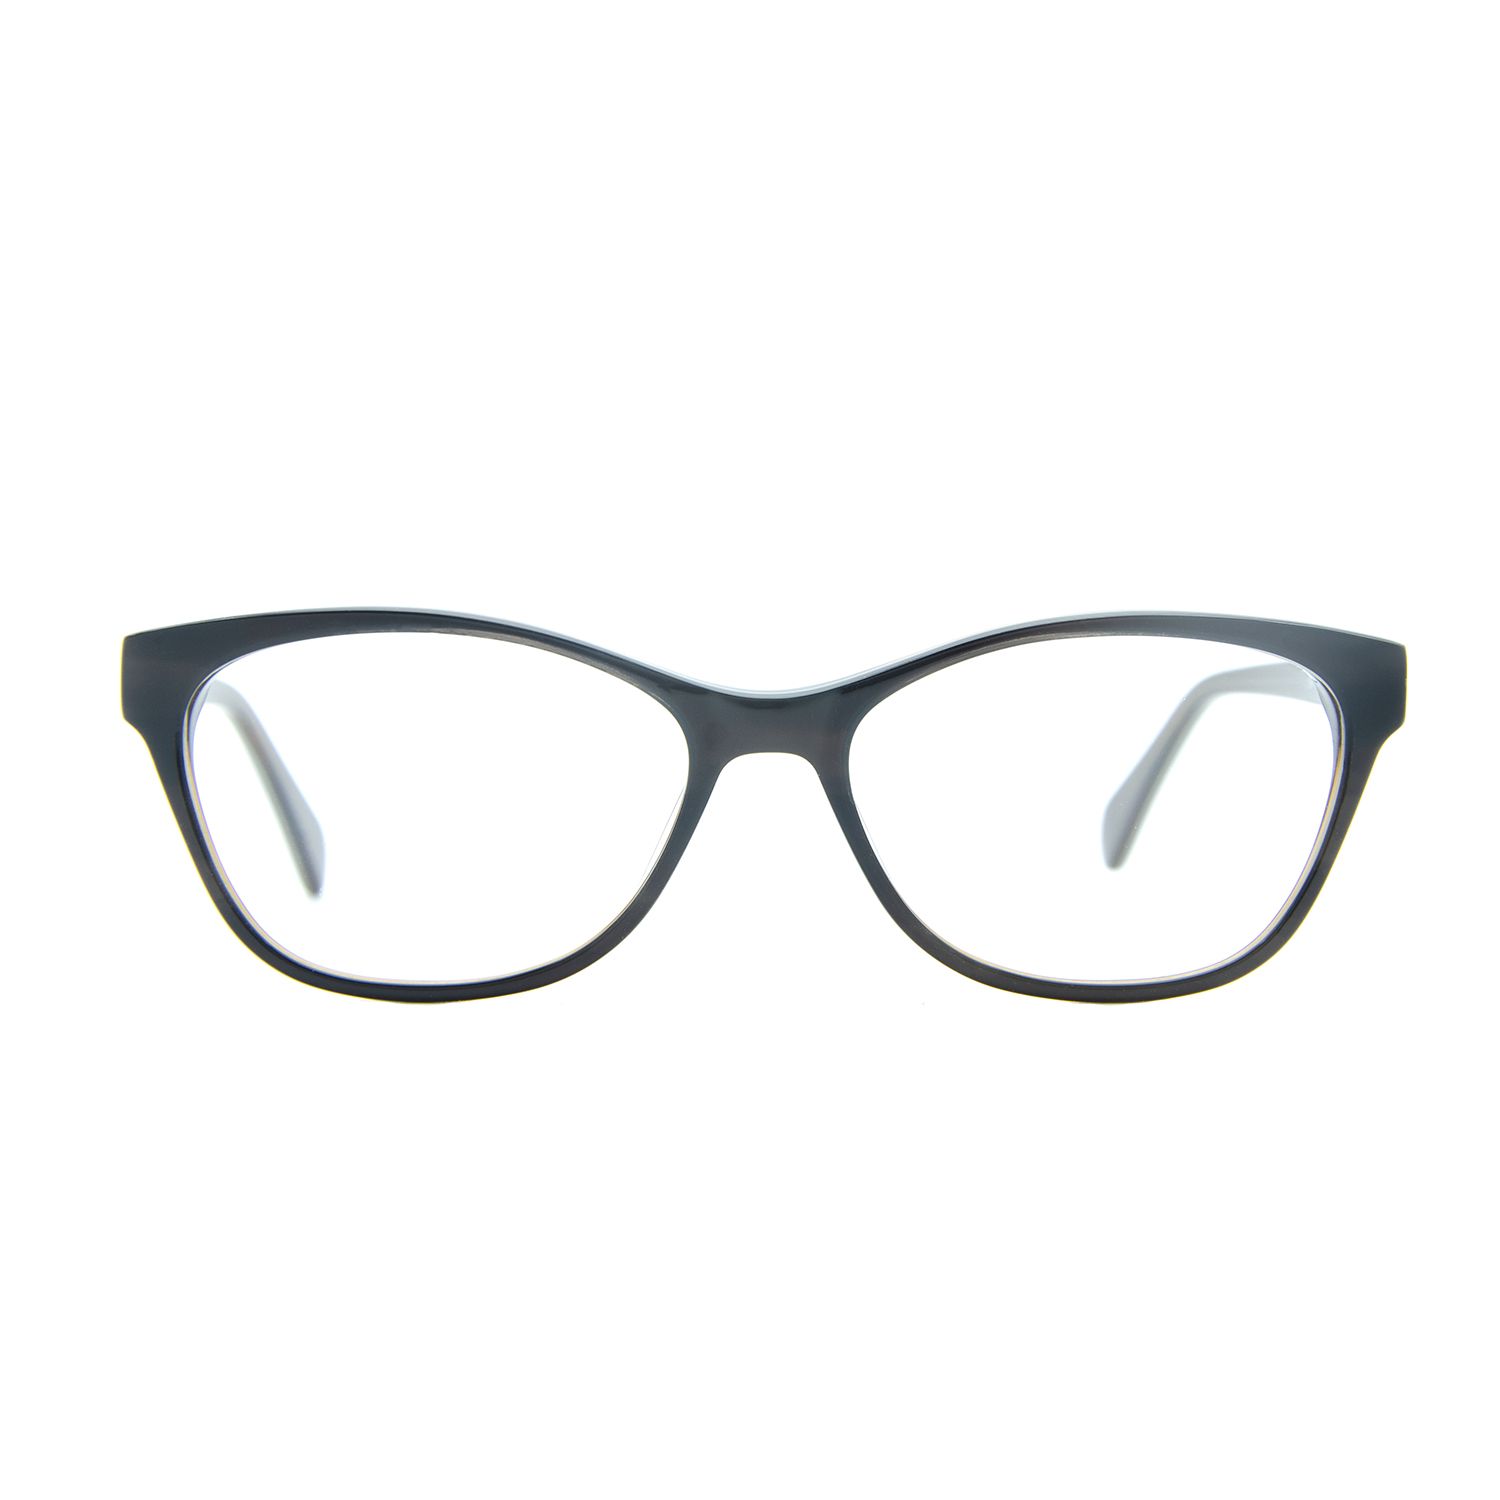 فریم عینک طبی ام اند او مدل Fia - c2 -  - 2